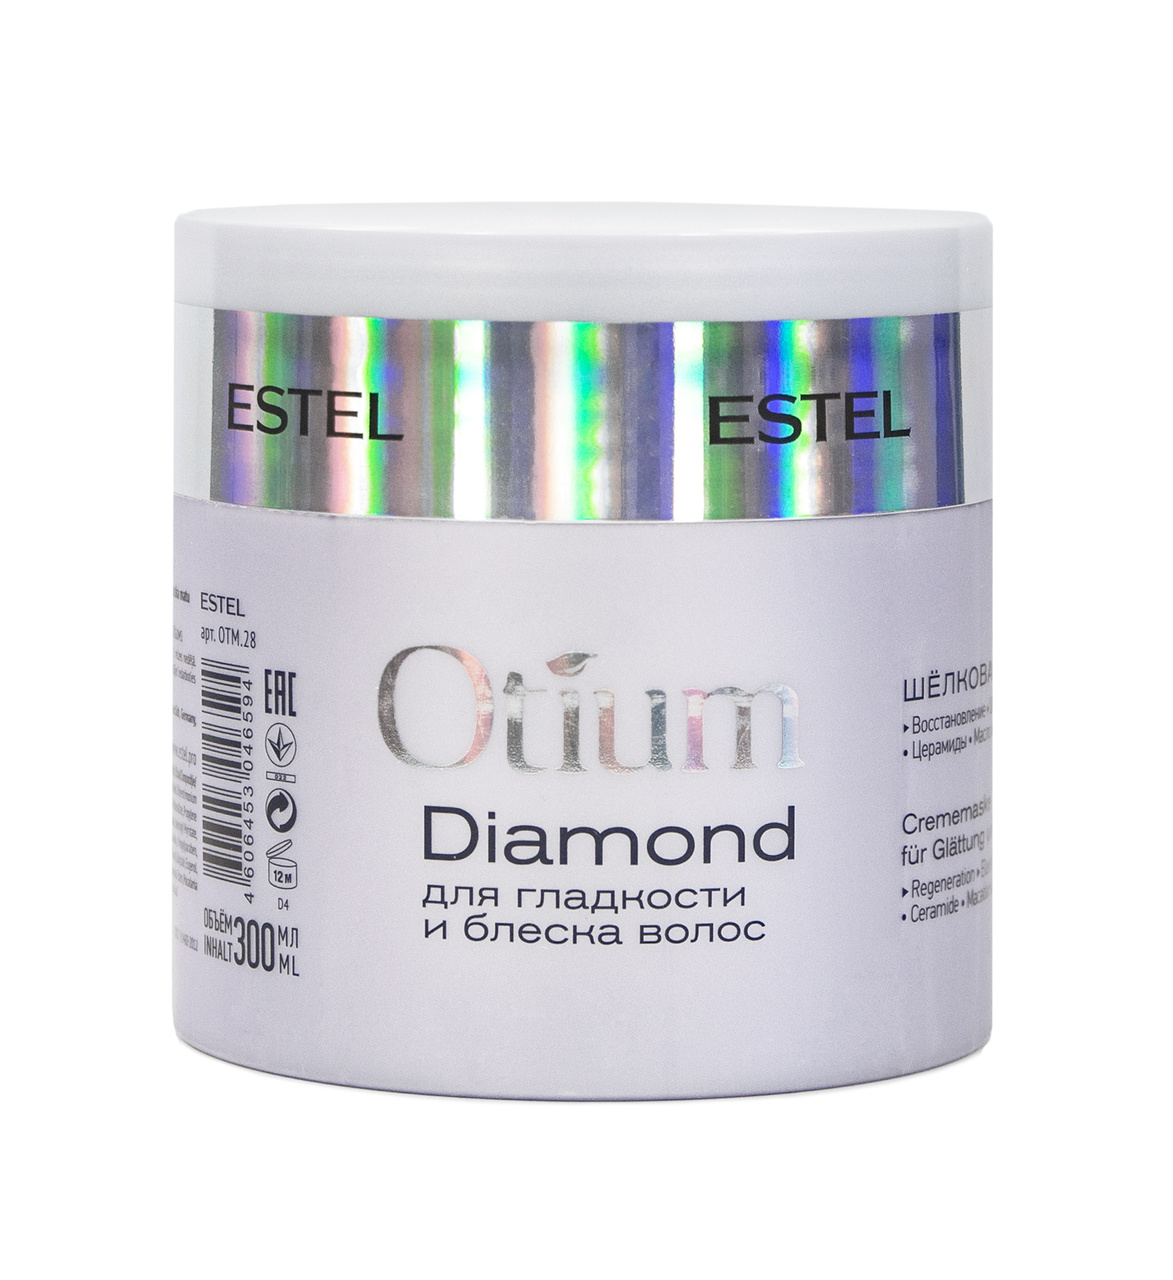 Otium маска для волос. Шёлковая маска для гладкости и блеска волос Otium Diamond, 300 мл. Estel Otium Diamond маска для гладкости и блеска. Маска диамонд Эстель. Маска отиум Эстель.